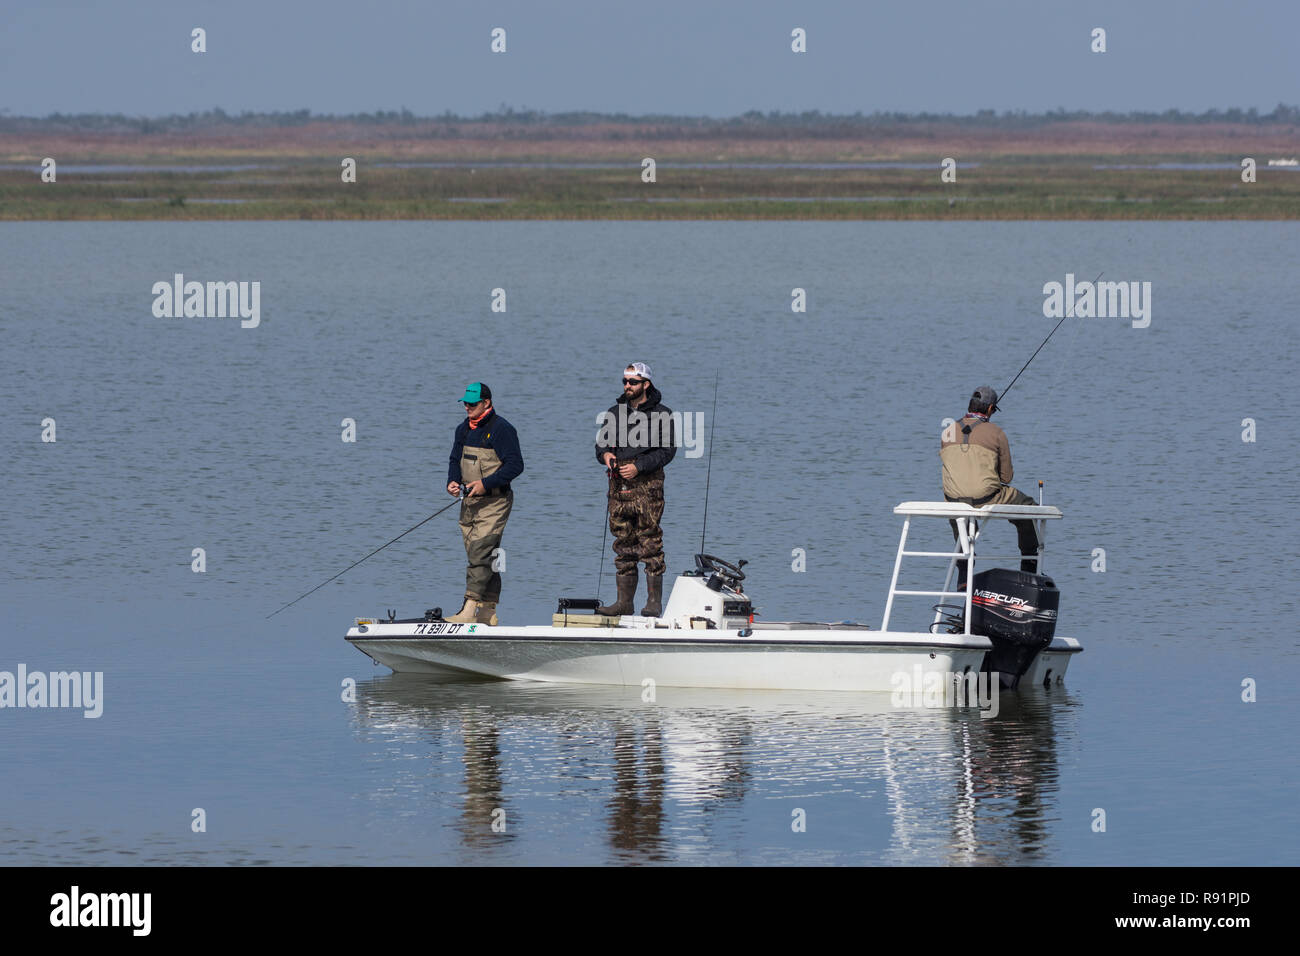 Tres hombres pescando en un pequeño bote. Aransas National Wildlife Refuge, Texas, EE.UU. Foto de stock